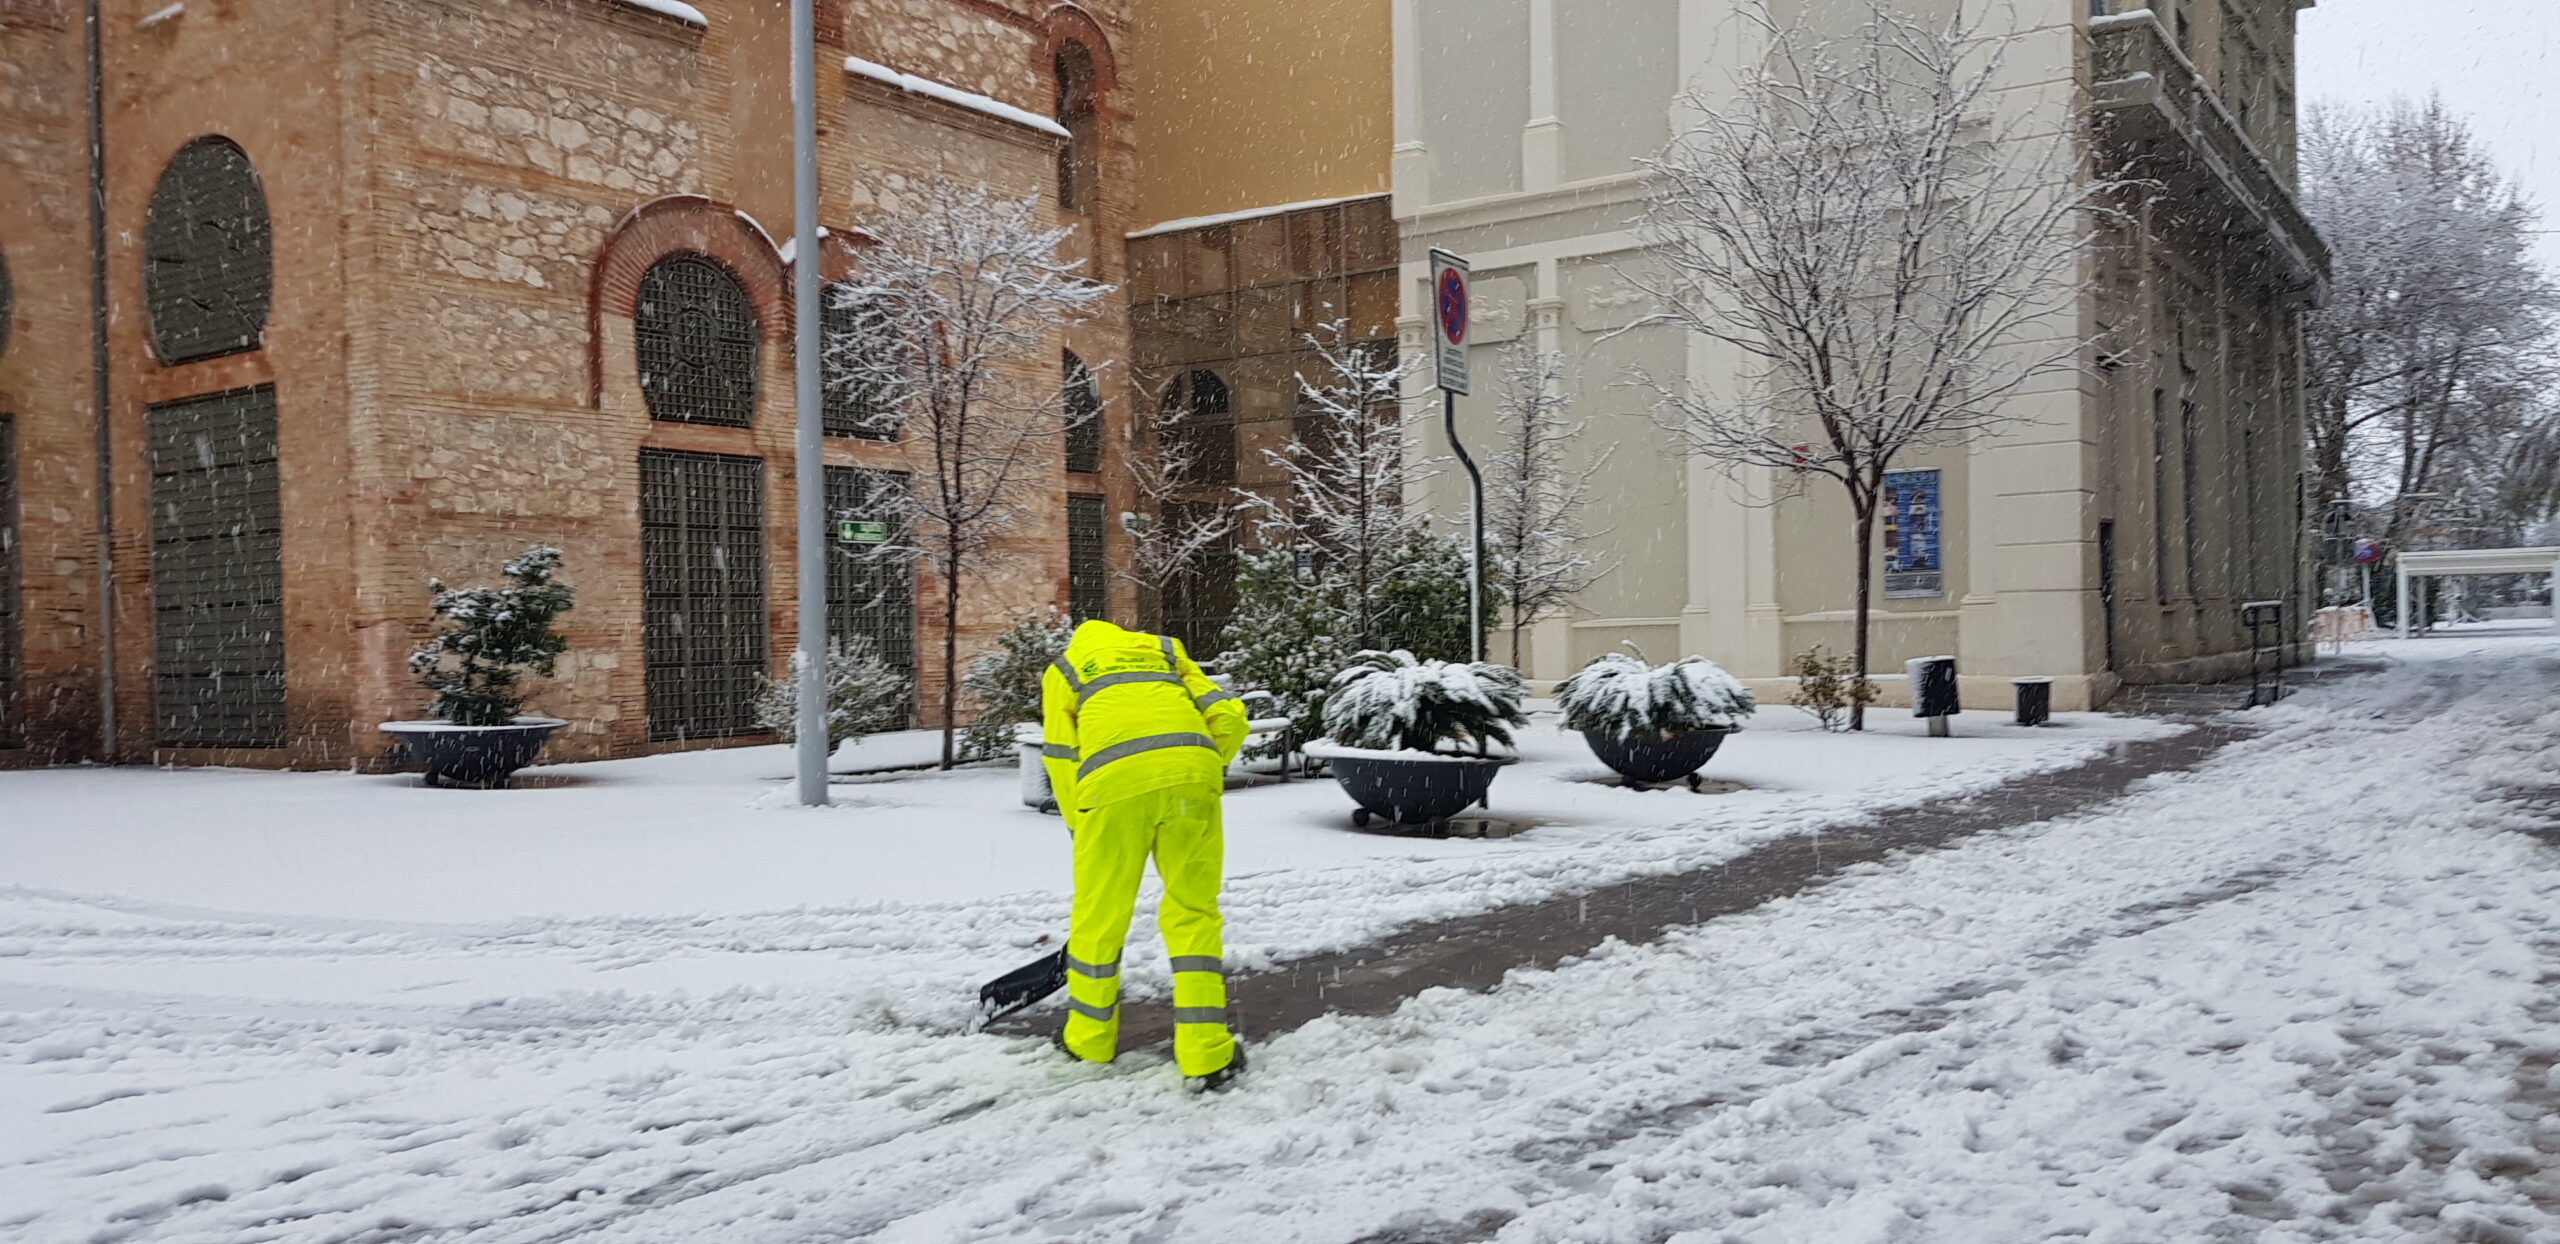 El alcalde valora positivamente el dispositivo de emergencia  puesto en marcha por la nevada